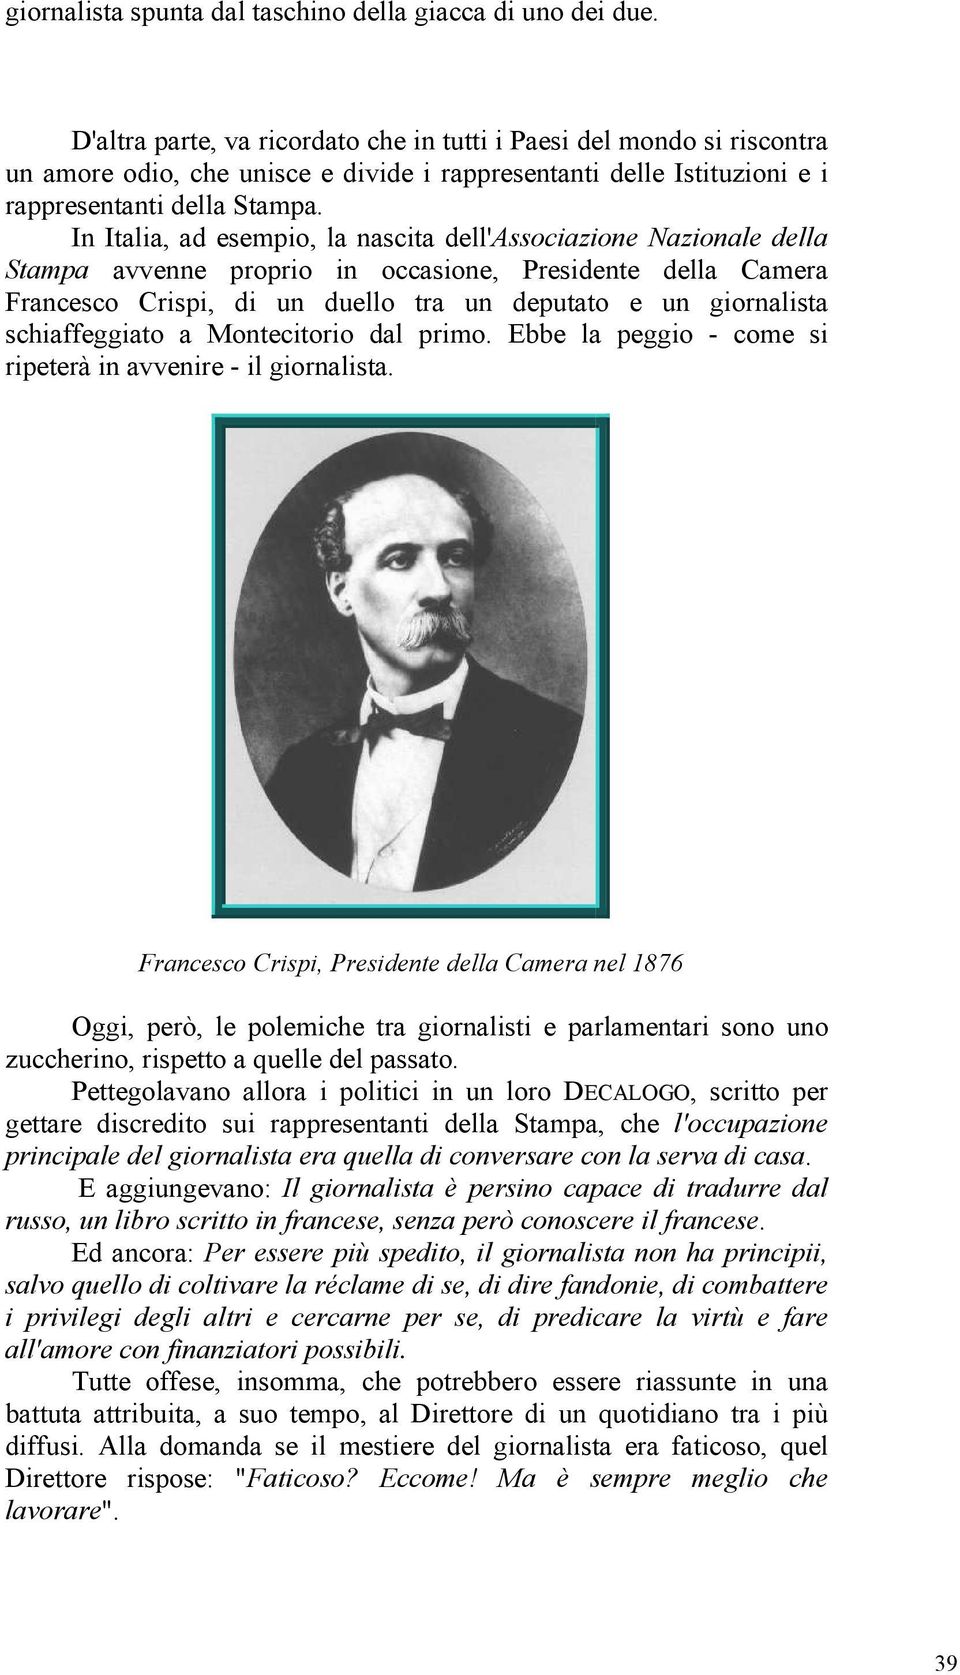 In Italia, ad esempio, la nascita dell'associazione Nazionale della Stampa avvenne proprio in occasione, Presidente della Camera Francesco Crispi, di un duello tra un deputato e un giornalista